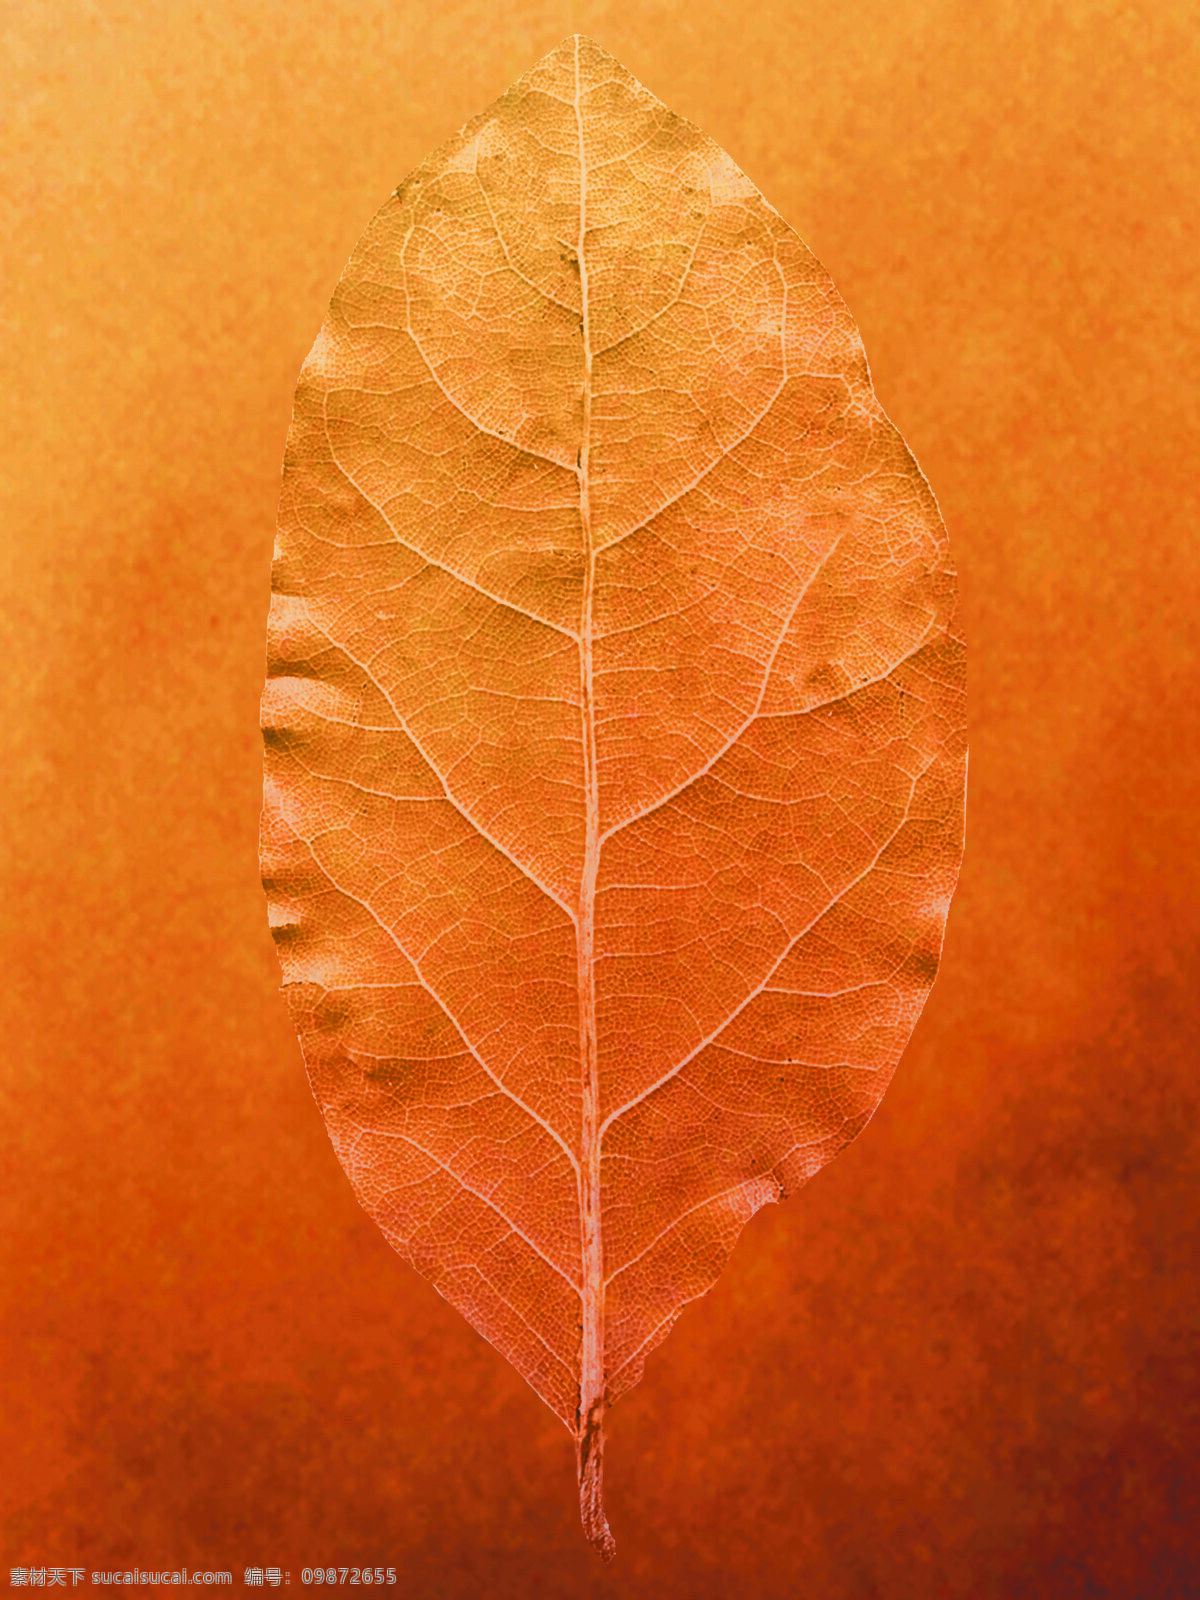 一叶知秋 叶子 设计素材 背景图片 广告图库 花草植物 树叶 叶子标本 生物世界 意.景 设计图库